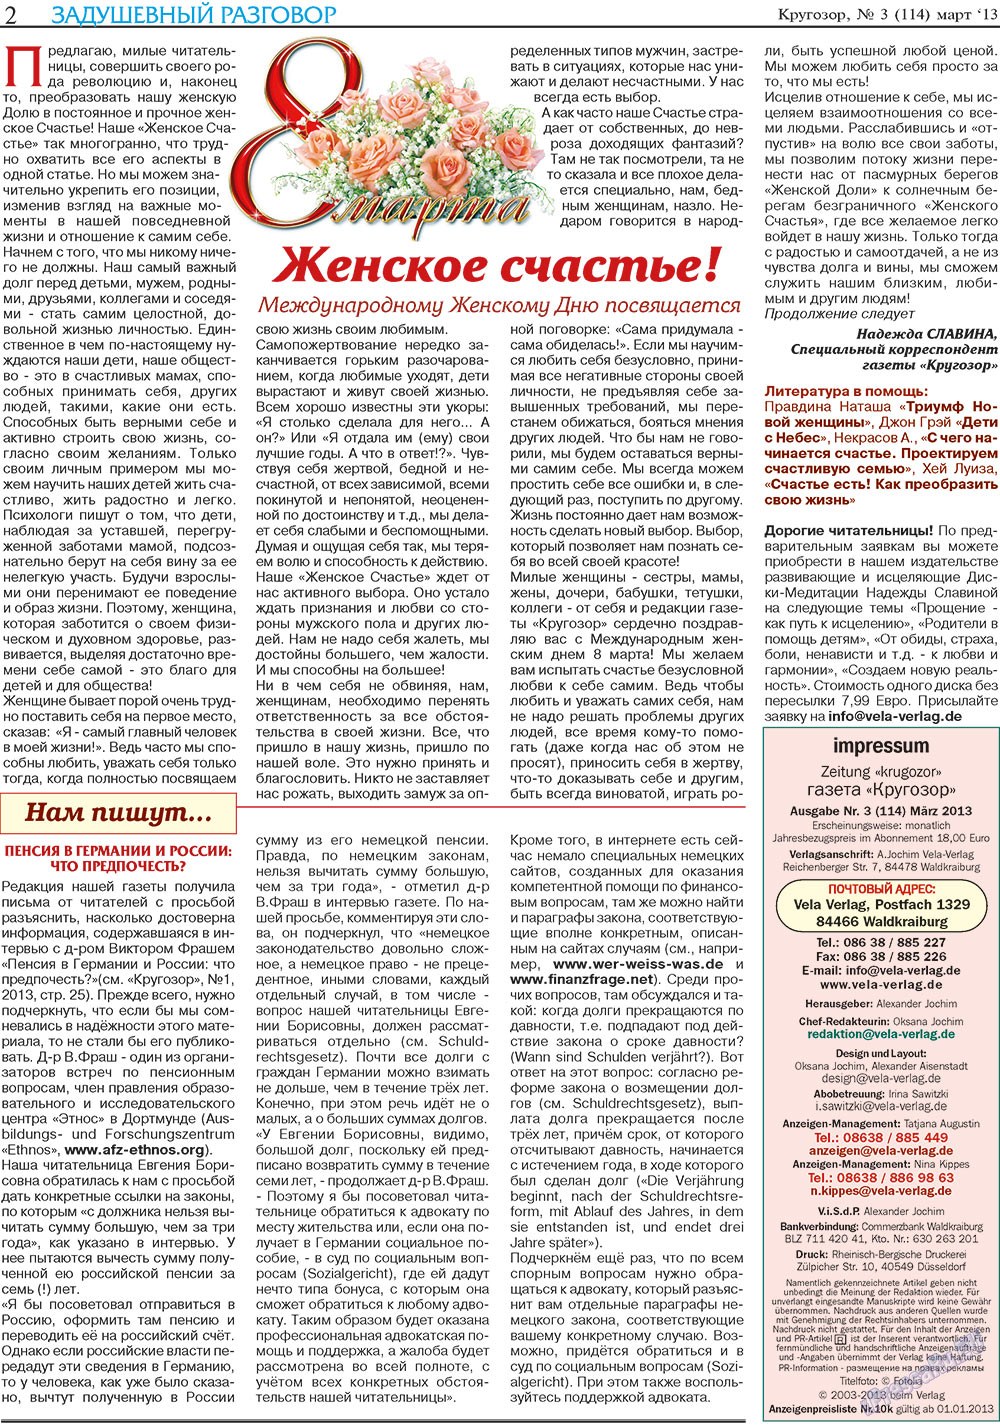 Кругозор, газета. 2013 №3 стр.2